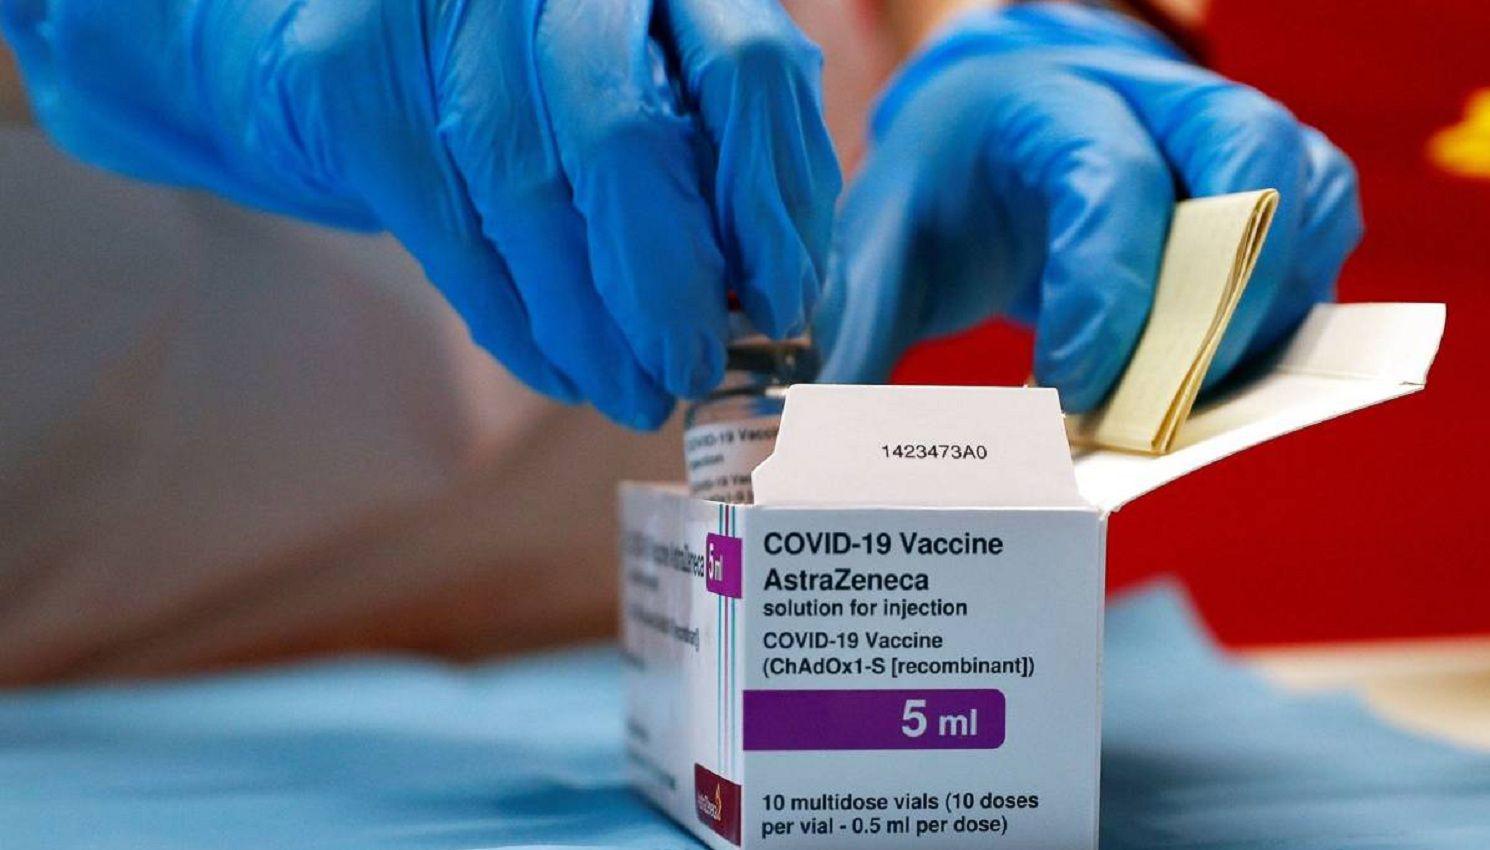 Reportaron siete muertes ligadas a la vacuna AstraZeneca en Reino Unido